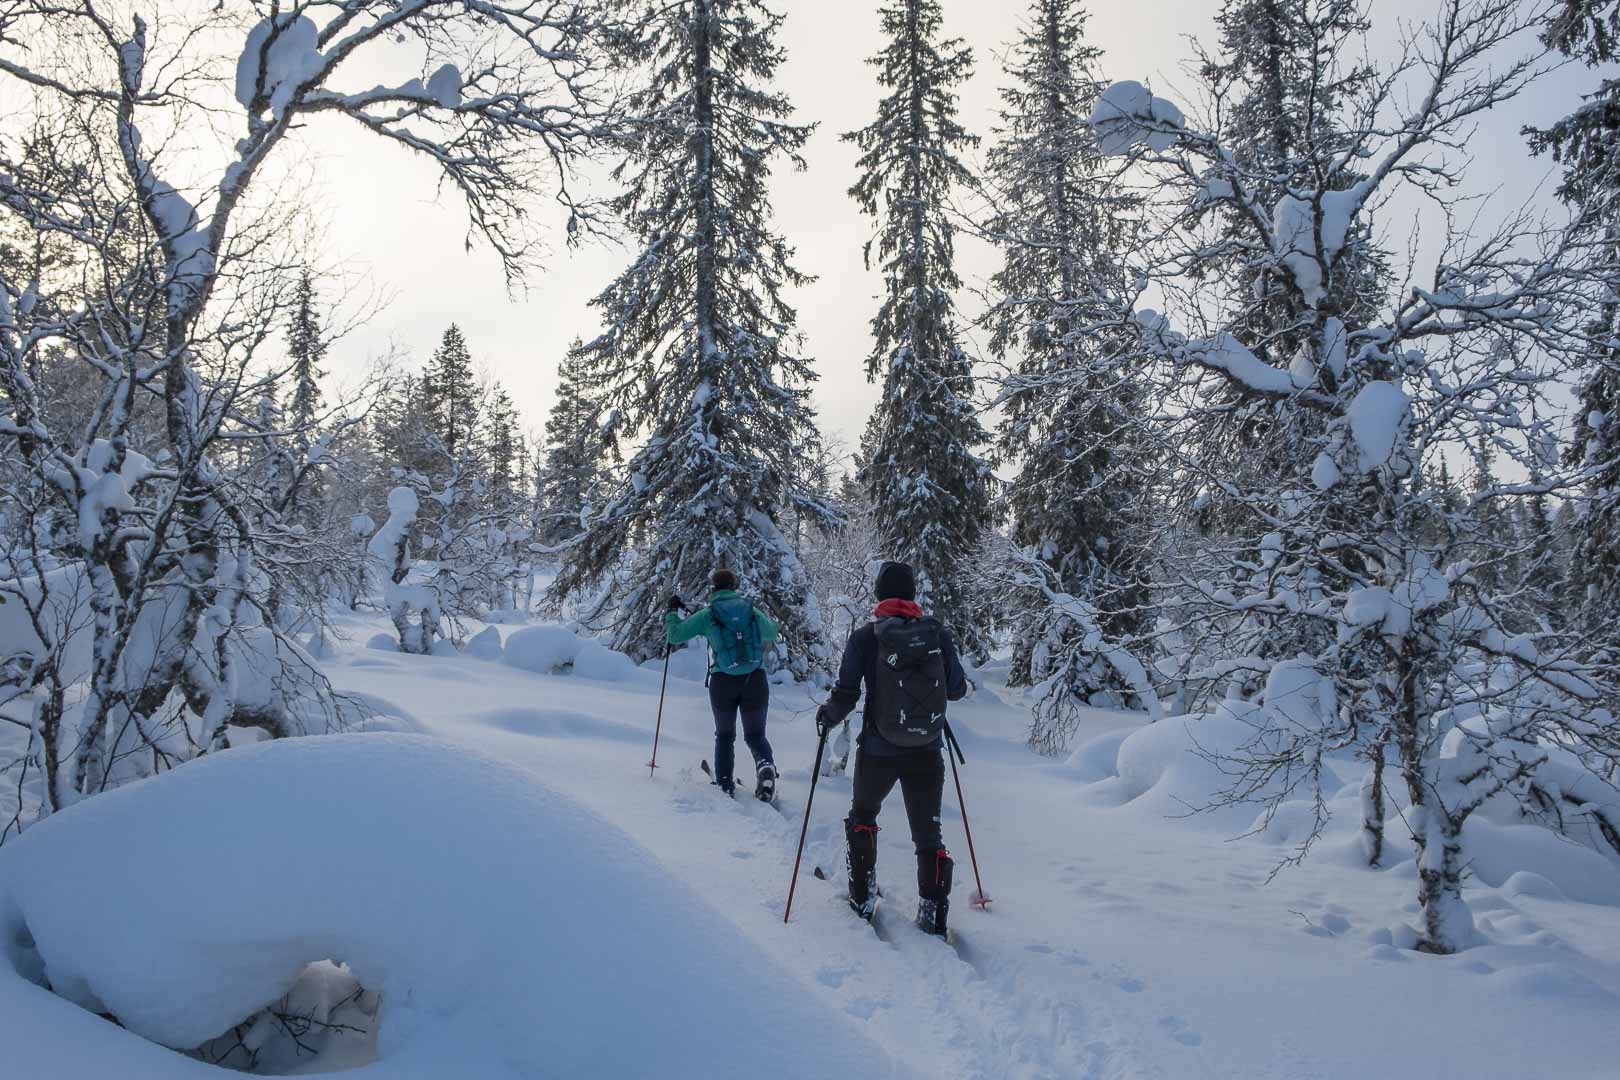 Winterabenteuer Lappland Wintertraum Winteraktivitäten Hundeschlitten Skitrekking Skiwandern Backcountry Ski Schneeschuhwandern Schneeschuh Fatbike